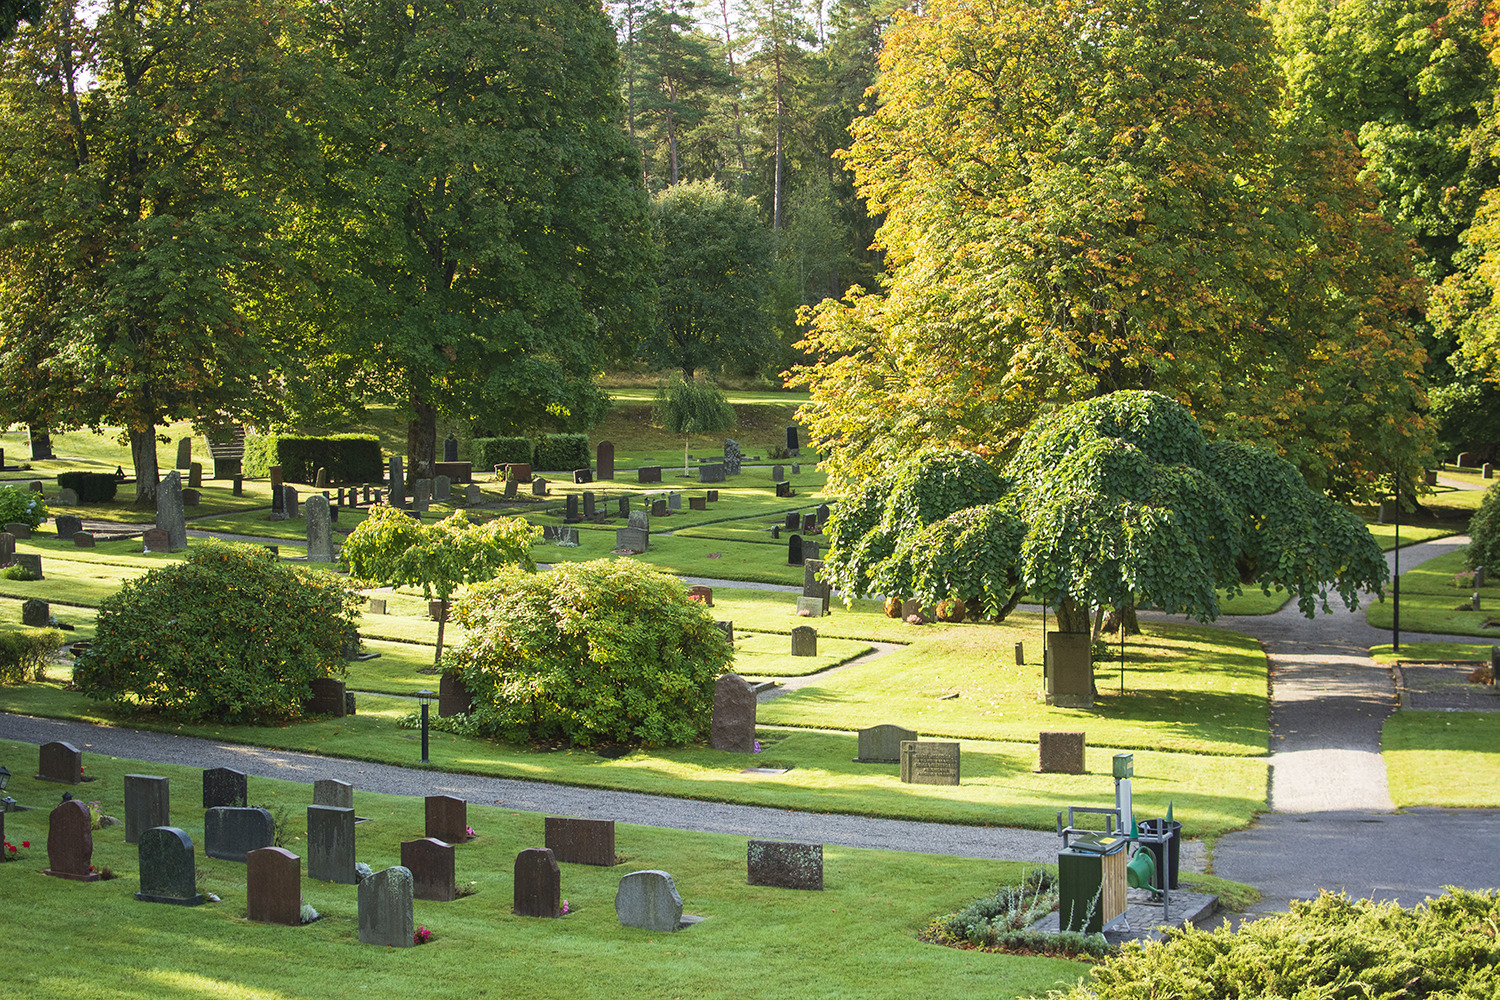 Gräsmattor med gravstenar och grusgångar mellan gravarna. Ett flertal stora träd och buskar syns också, bland annat en paraplyalm som är ett träd där trädkronan hänger som ett paraply över trädstammen. 